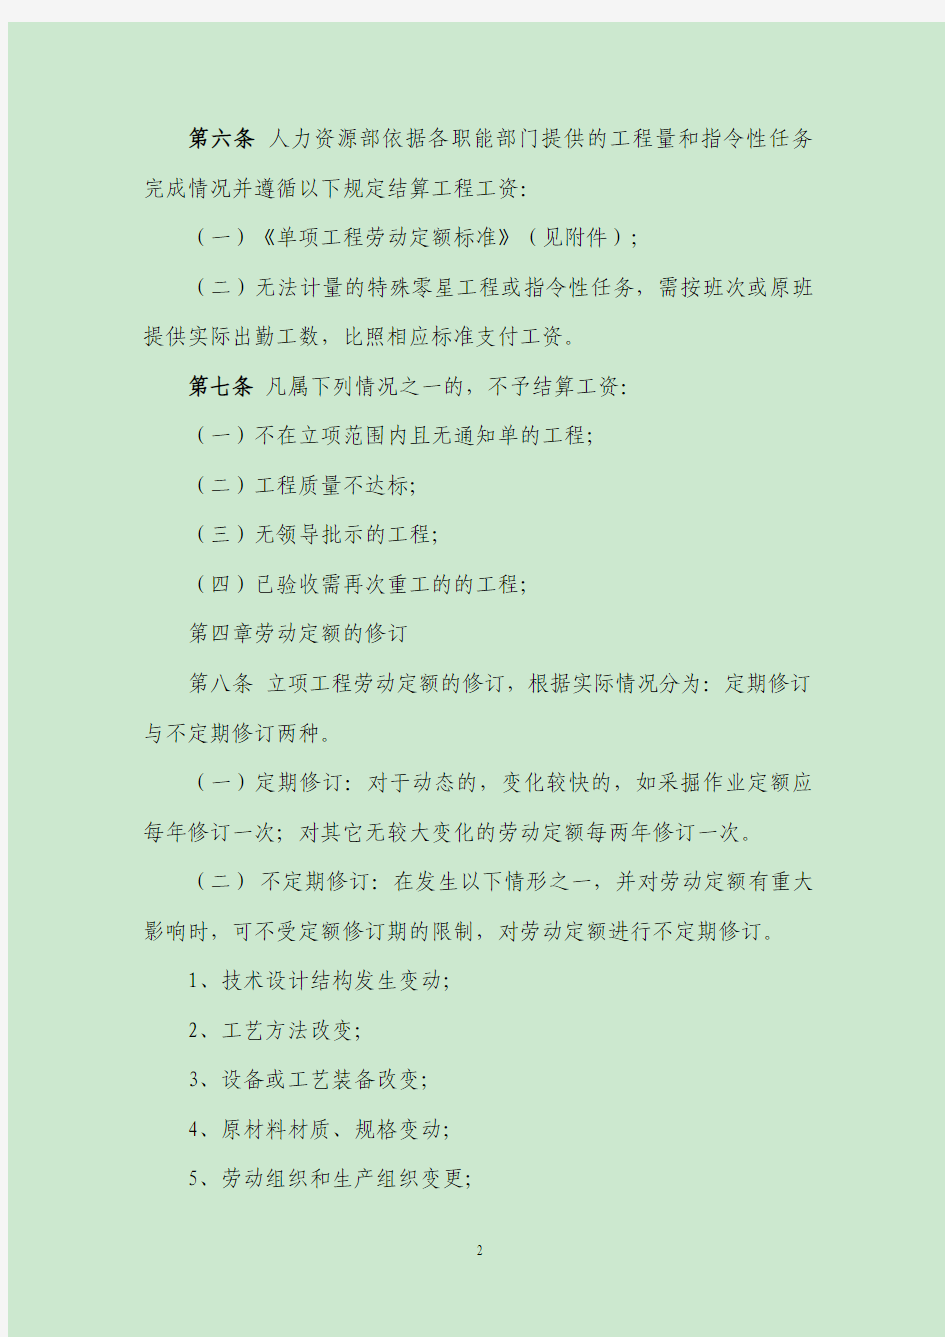 单项工程劳动定额管理办法(试行)2013.7.22